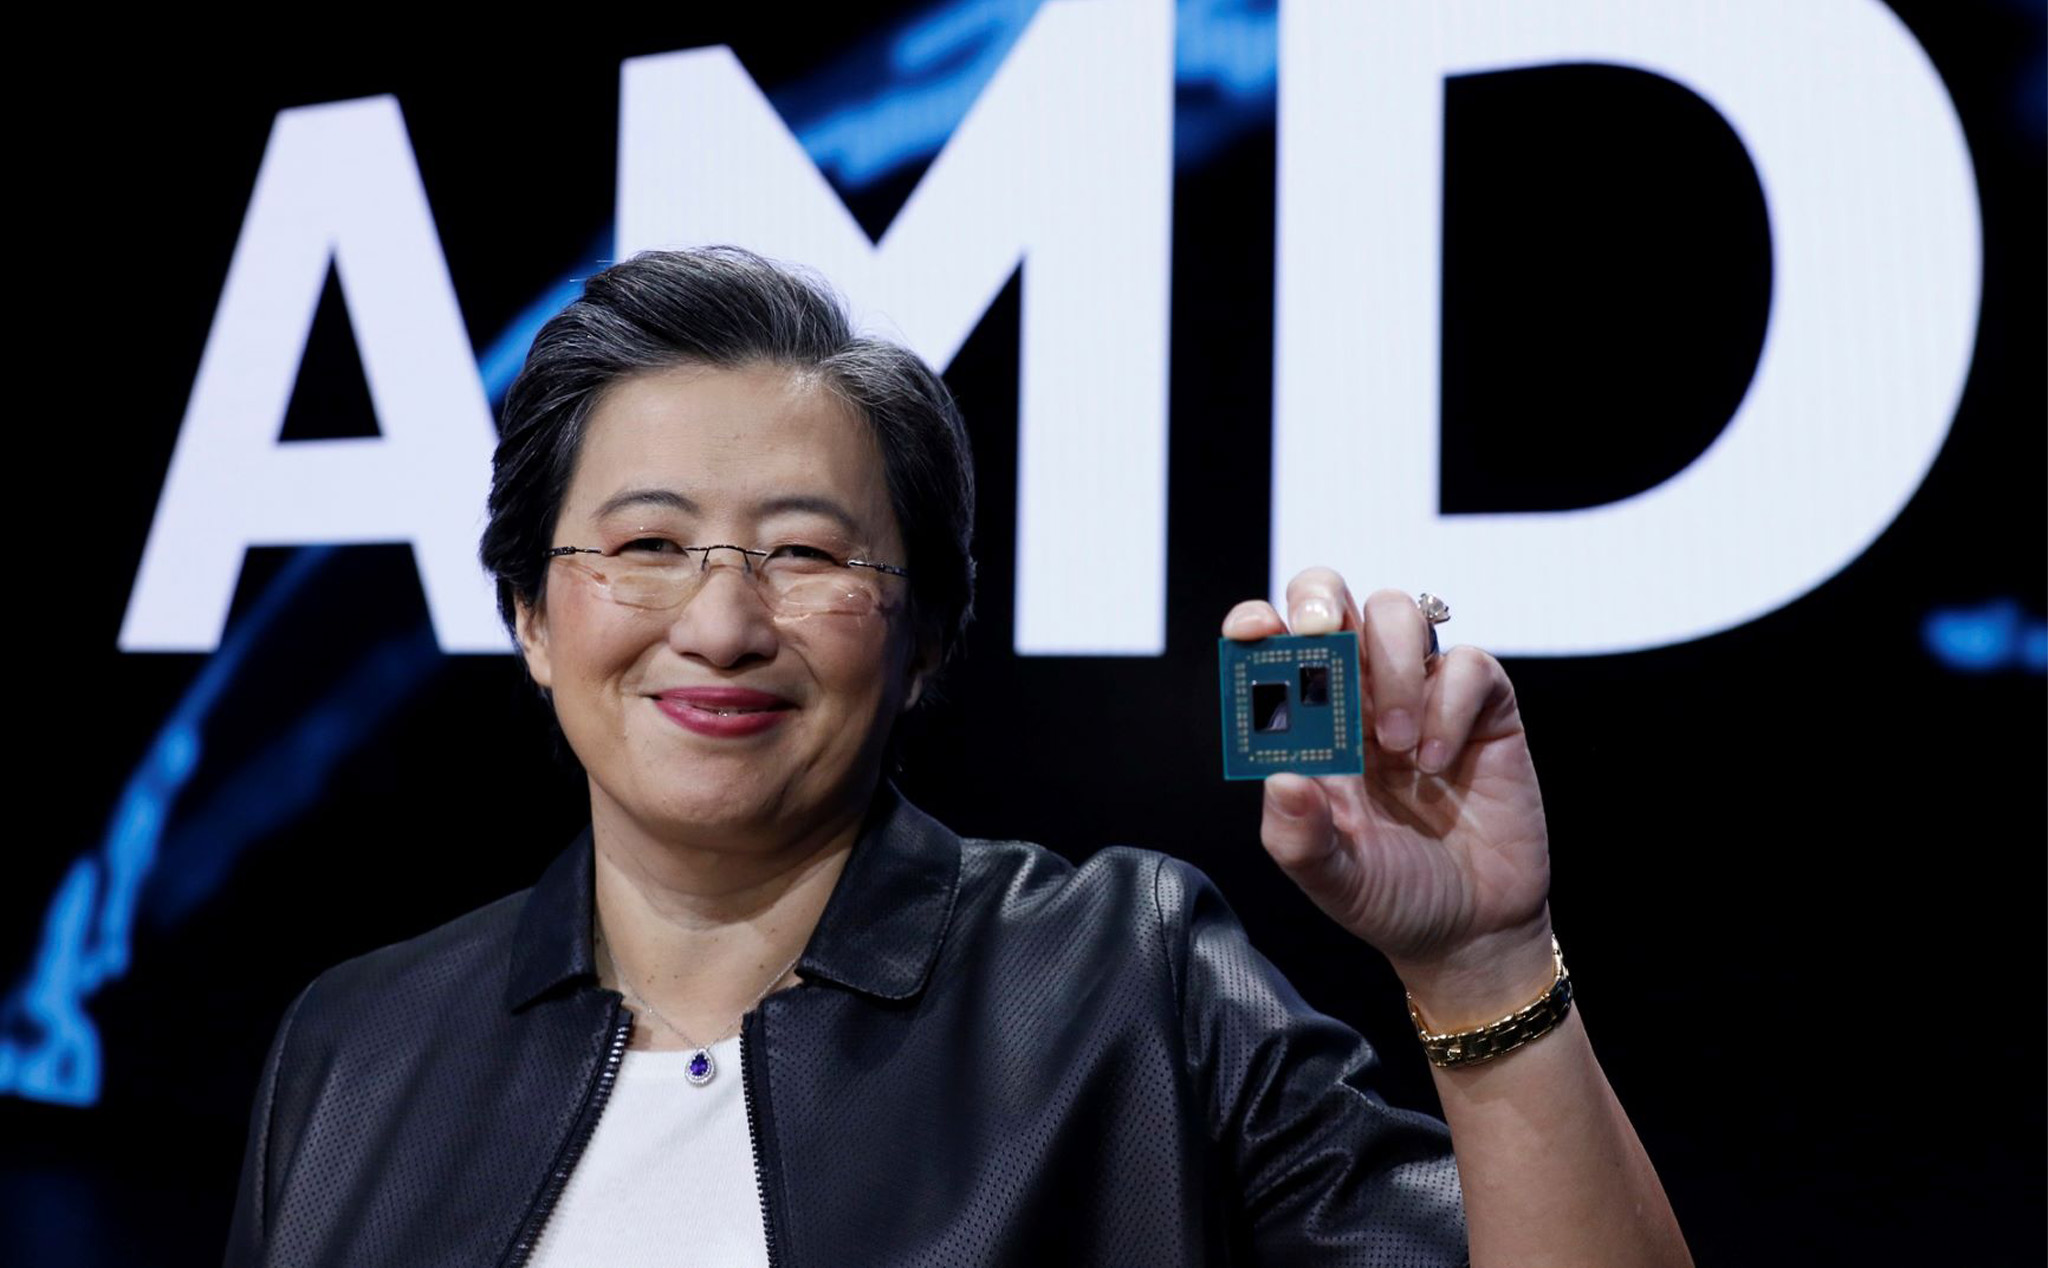 AMD âm thầm loại CPU Threadripper thế hệ 3 khỏi tiến trình ra mắt sản phẩm 2019